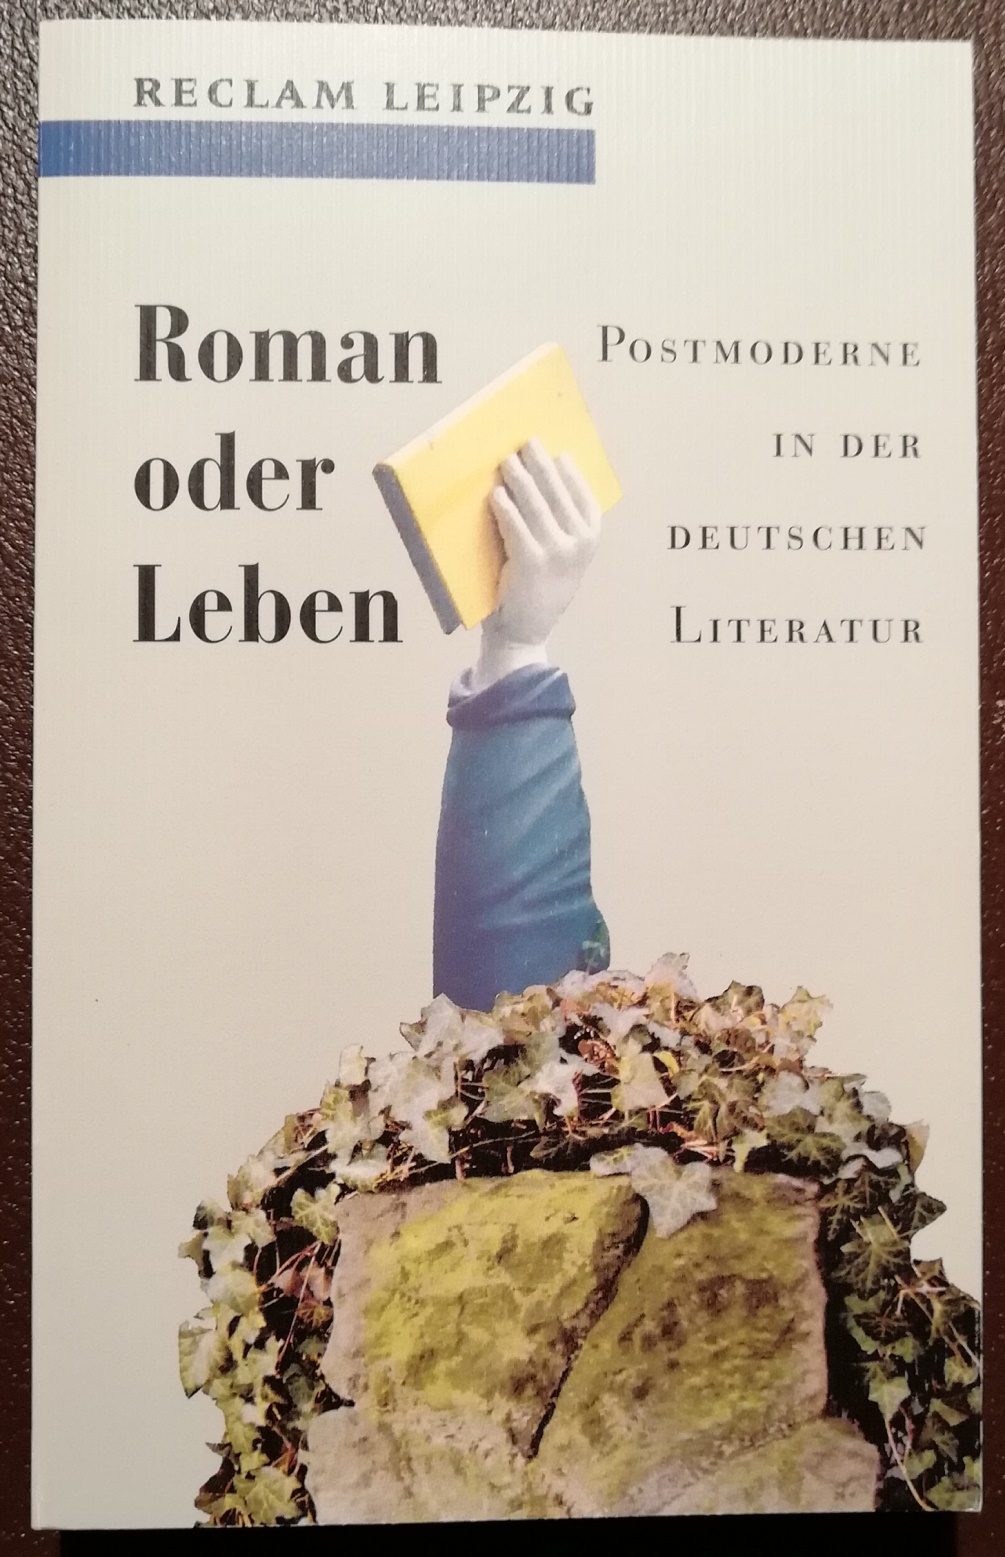 Roman oder Leben. Postmoderne in der deutschen Literatur - Wittstock, Uwe